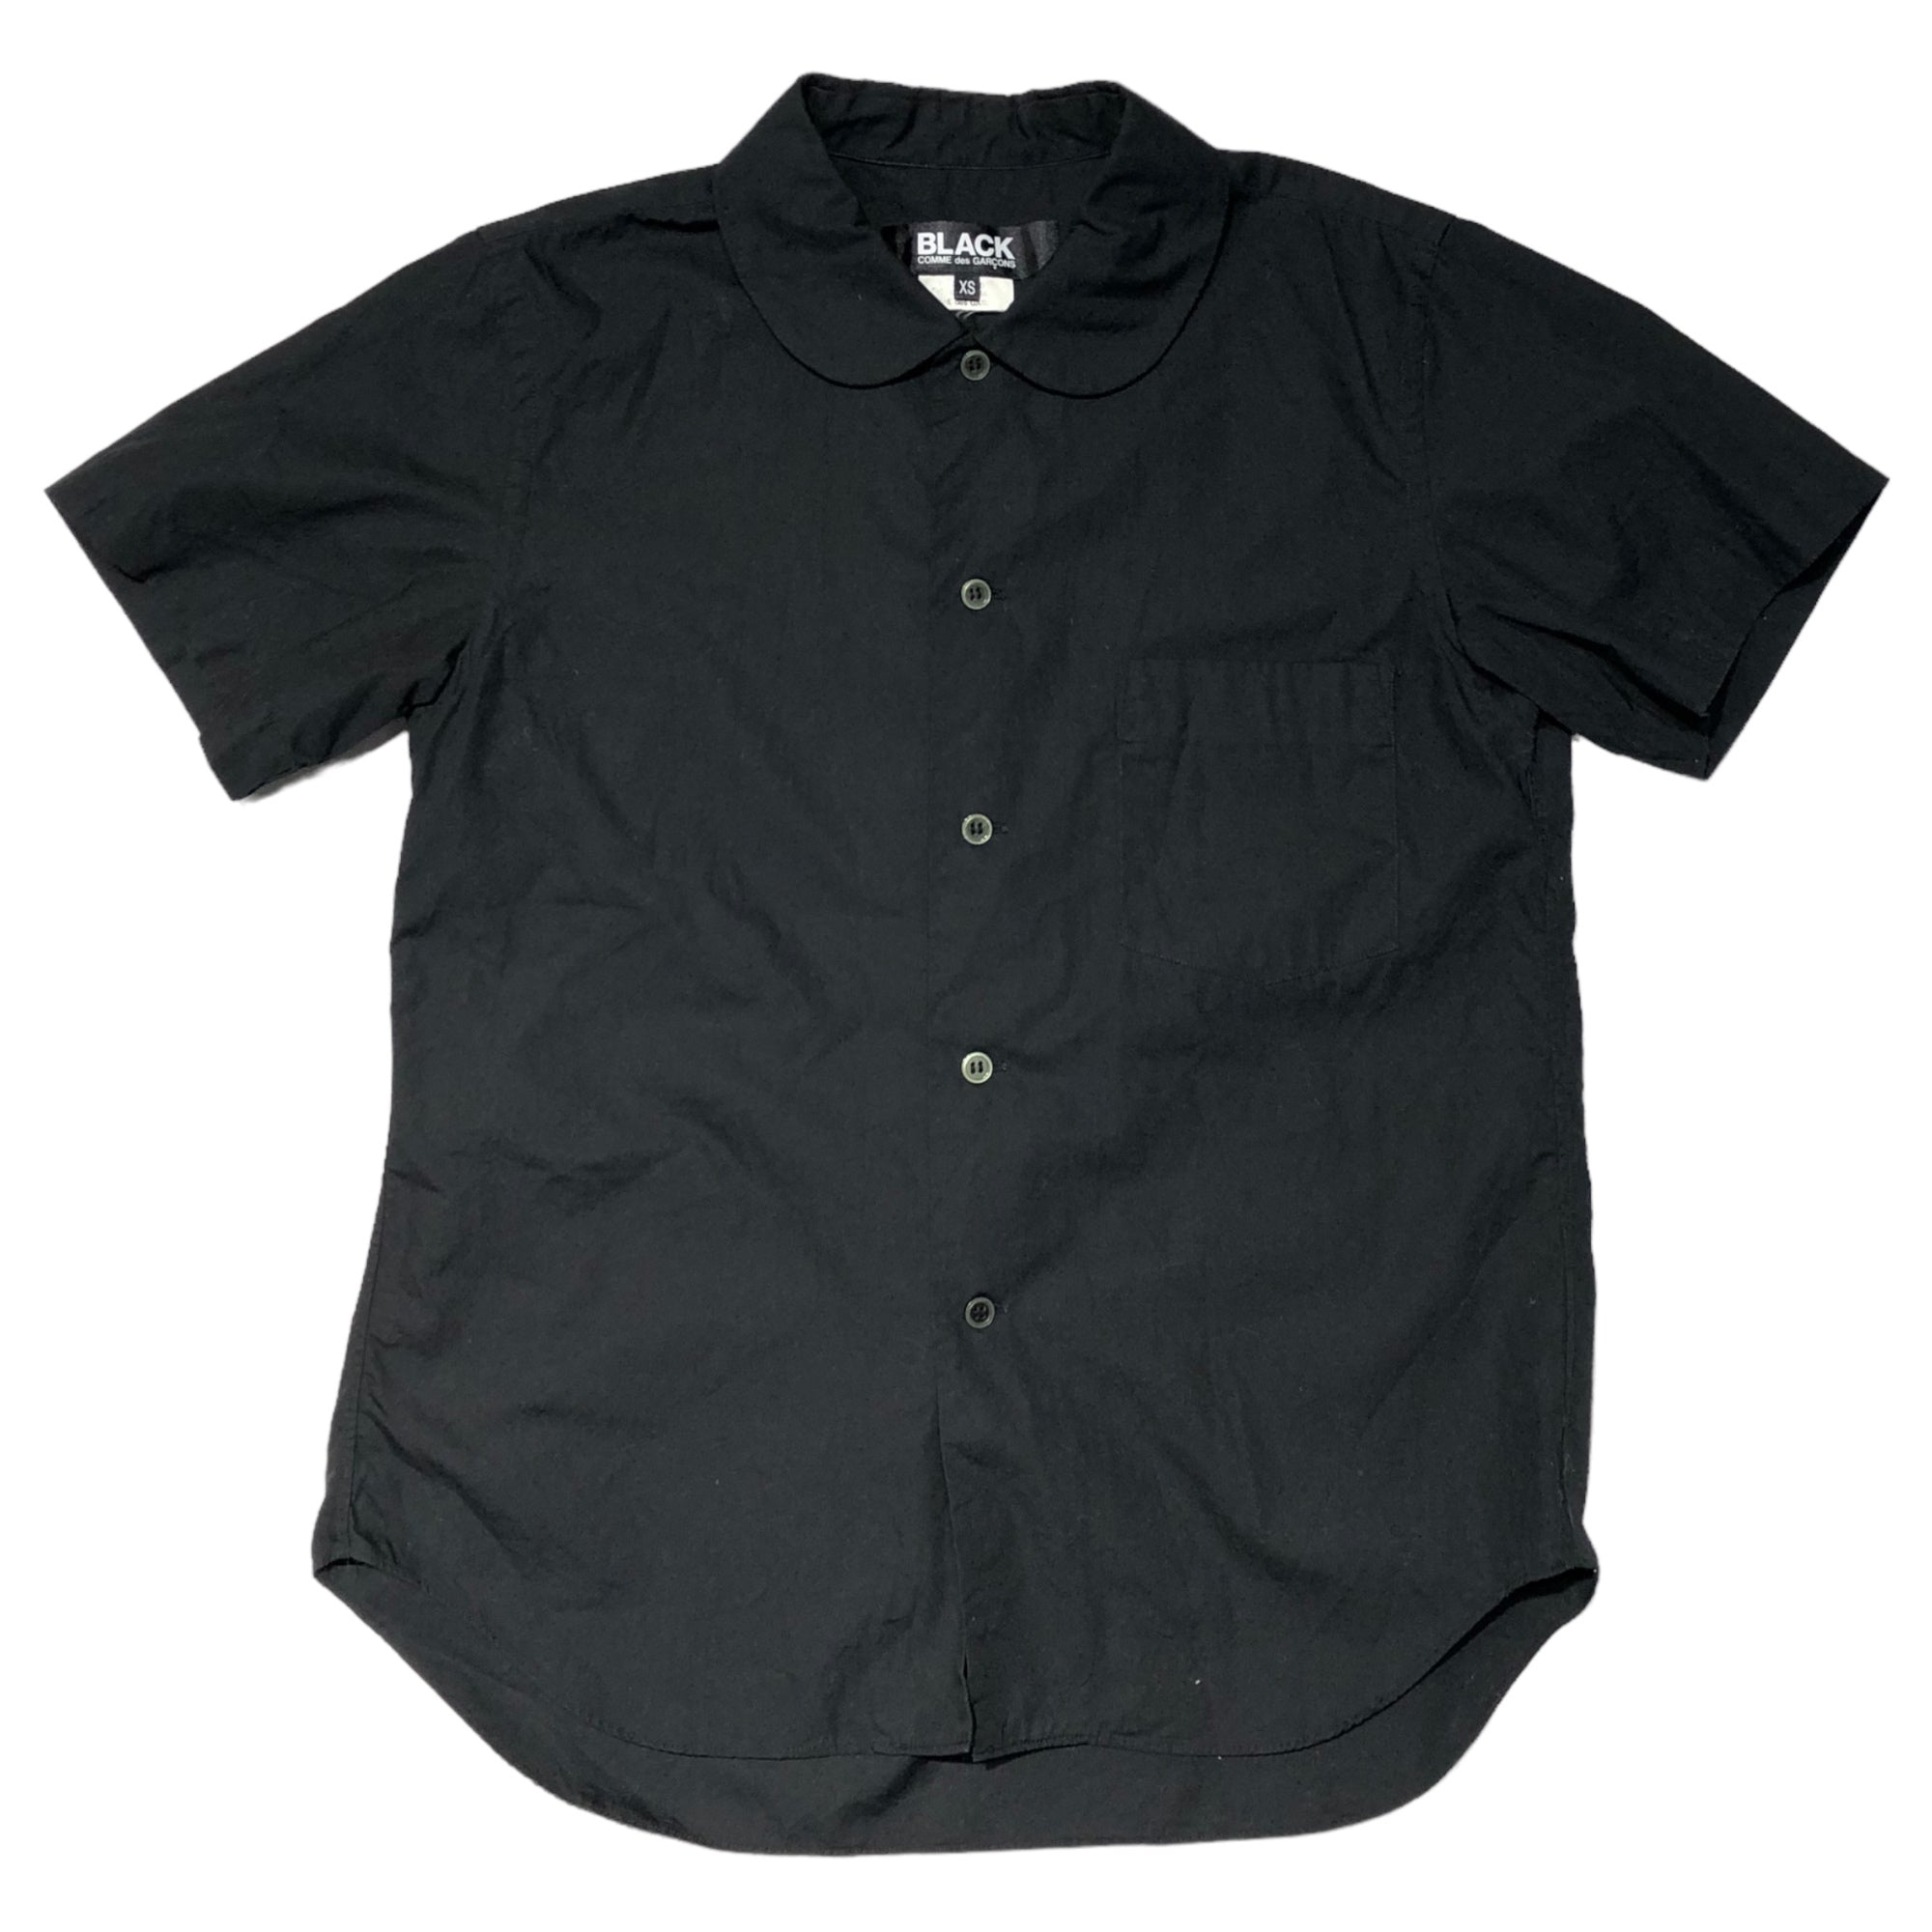 BLACK COMME des GARCONS(ブラックコムデギャルソン) 17SS round collar S/S shirt 丸襟半袖シャツ  1S-B018 XS ブラック ブラウス AD2016